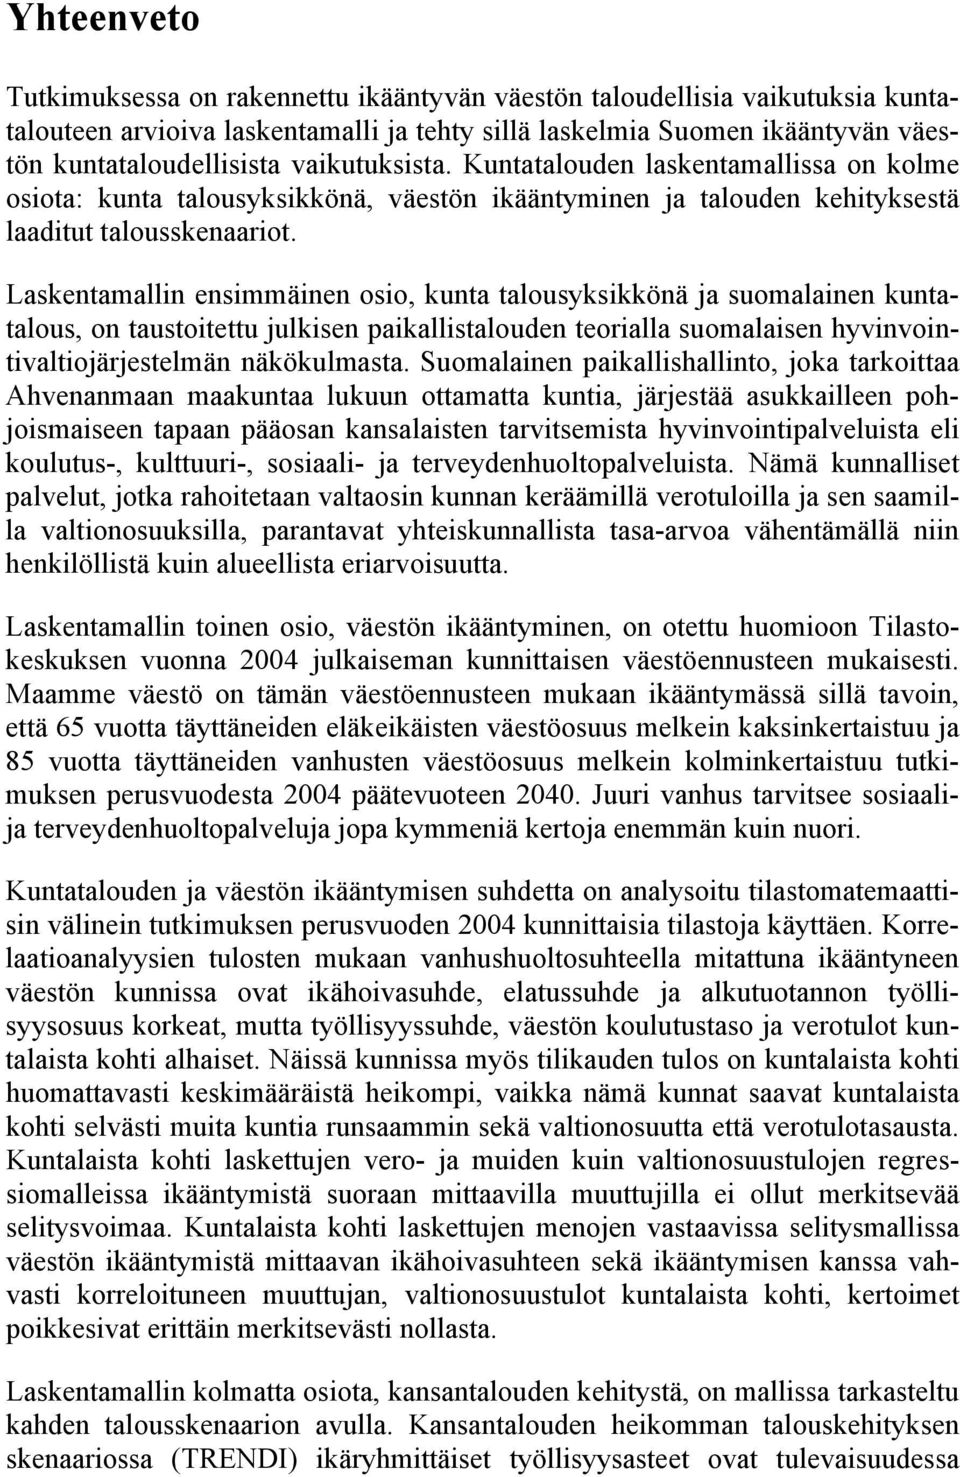 Laskentamallin ensimmäinen osio, kunta talousyksikkönä ja suomalainen kuntatalous, on taustoitettu julkisen paikallistalouden teorialla suomalaisen hyvinvointivaltiojärjestelmän näkökulmasta.